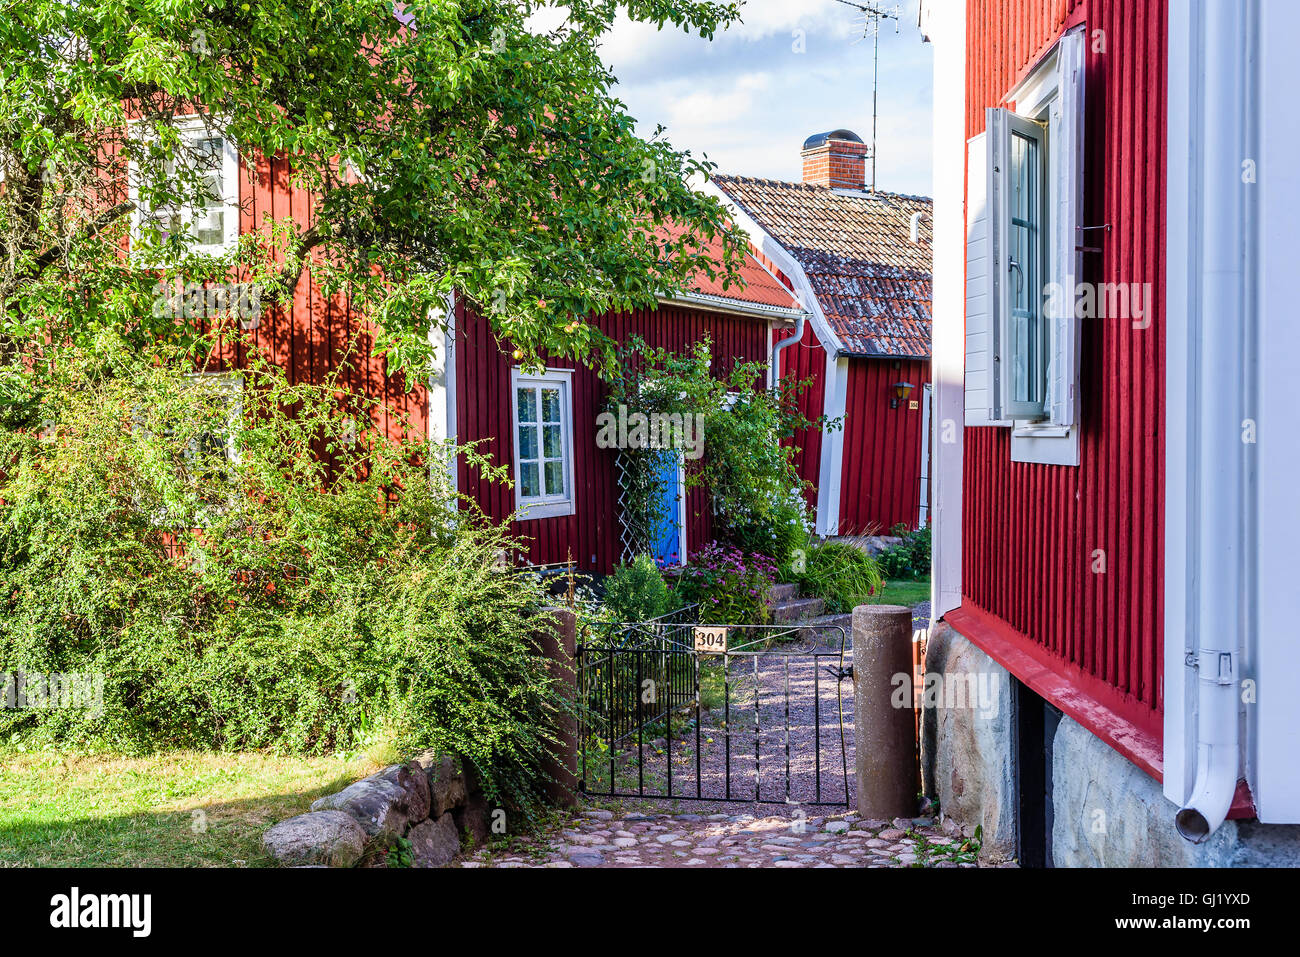 Pataholm, Schweden - 9. August 2016: Typisches Dorf Haus im alten Stil. Roten und weißen Holzhäusern und kleinen Toren mit schmalen pa Stockfoto